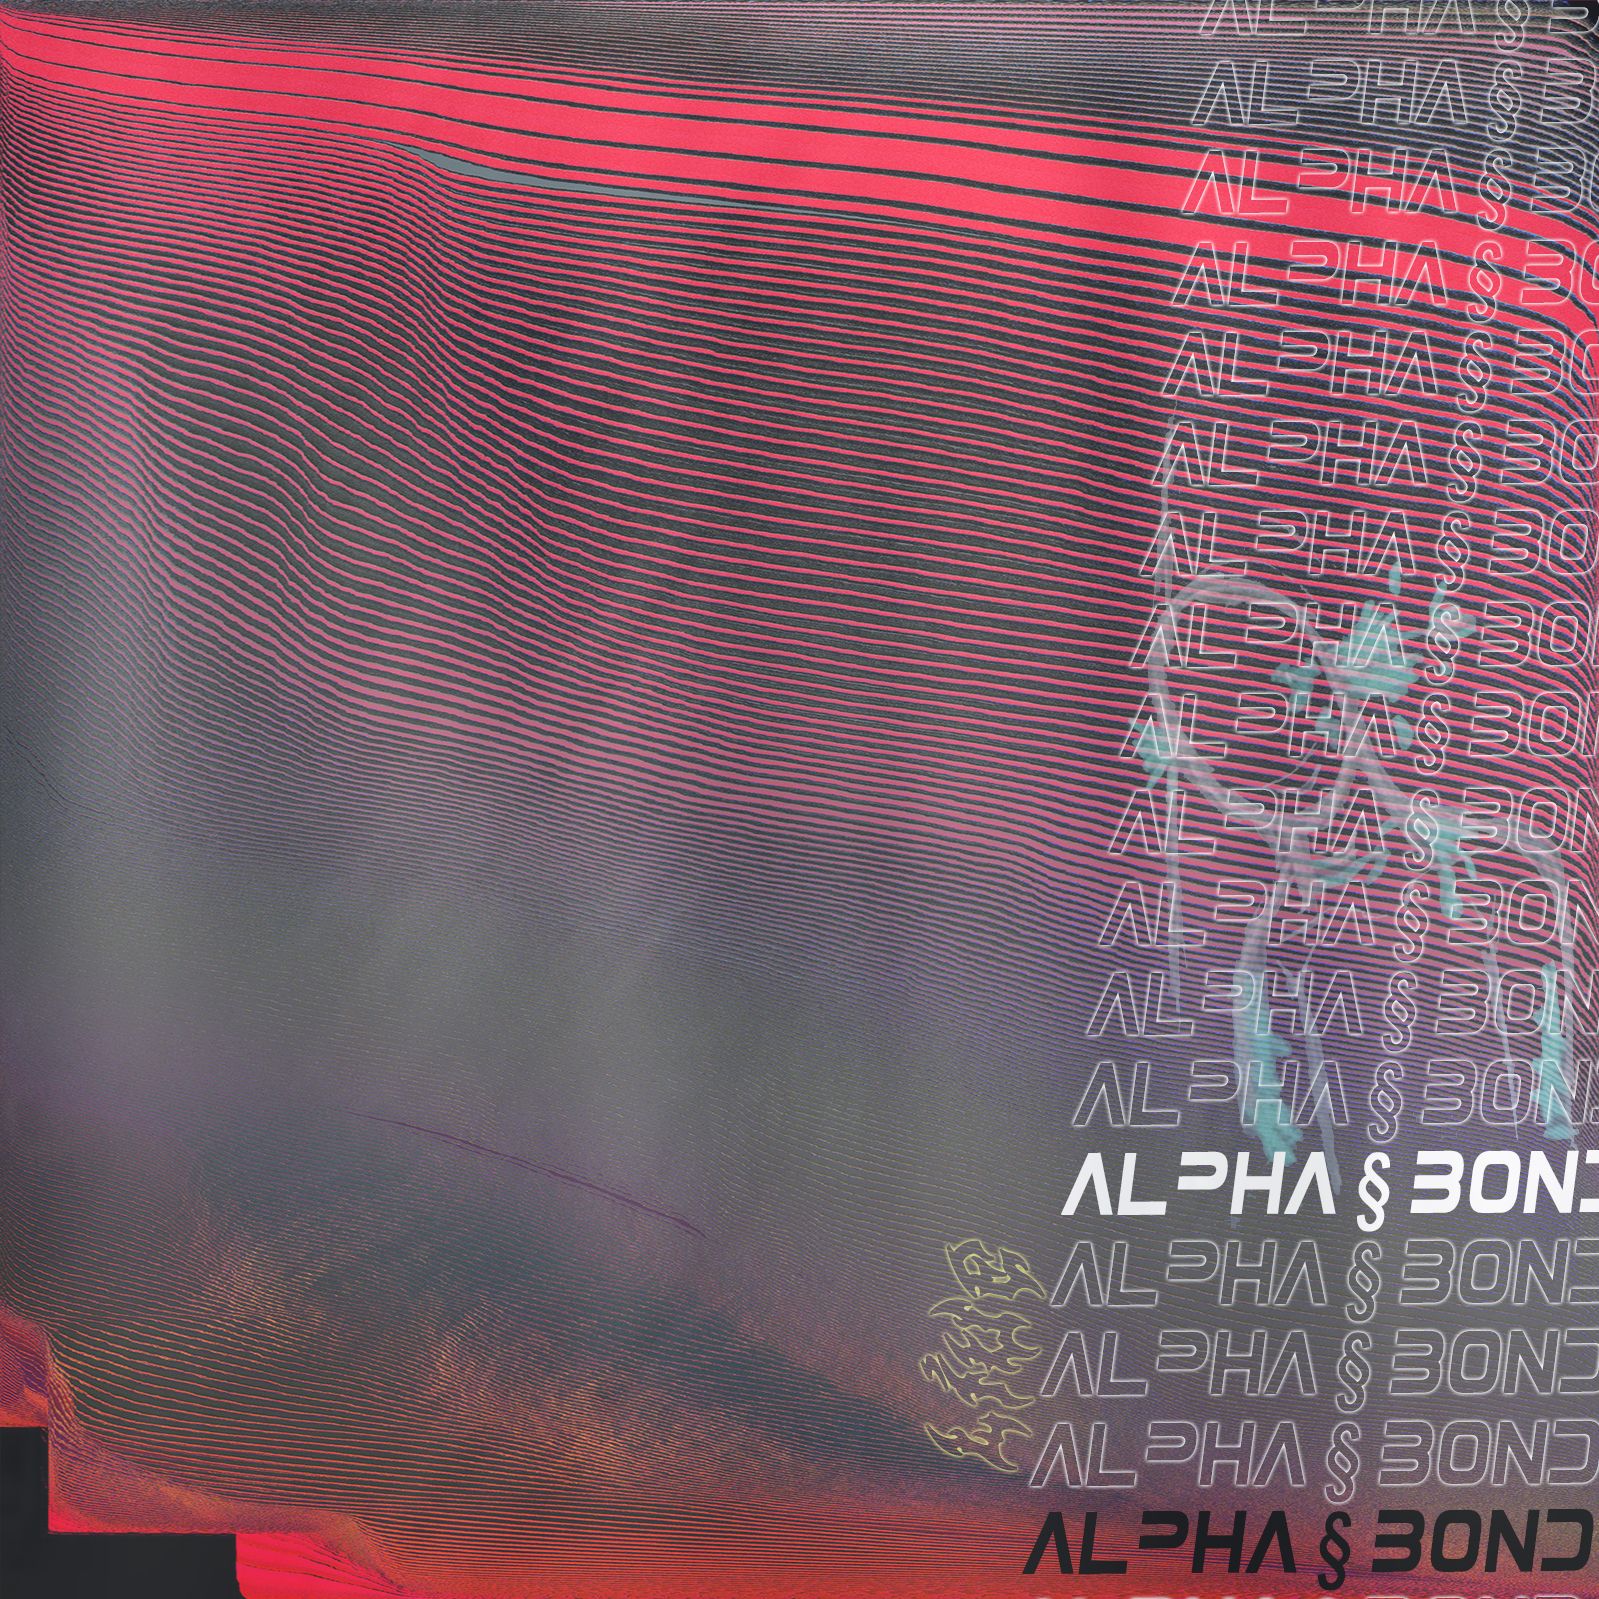 ഡൗൺലോഡ് alpha § bond